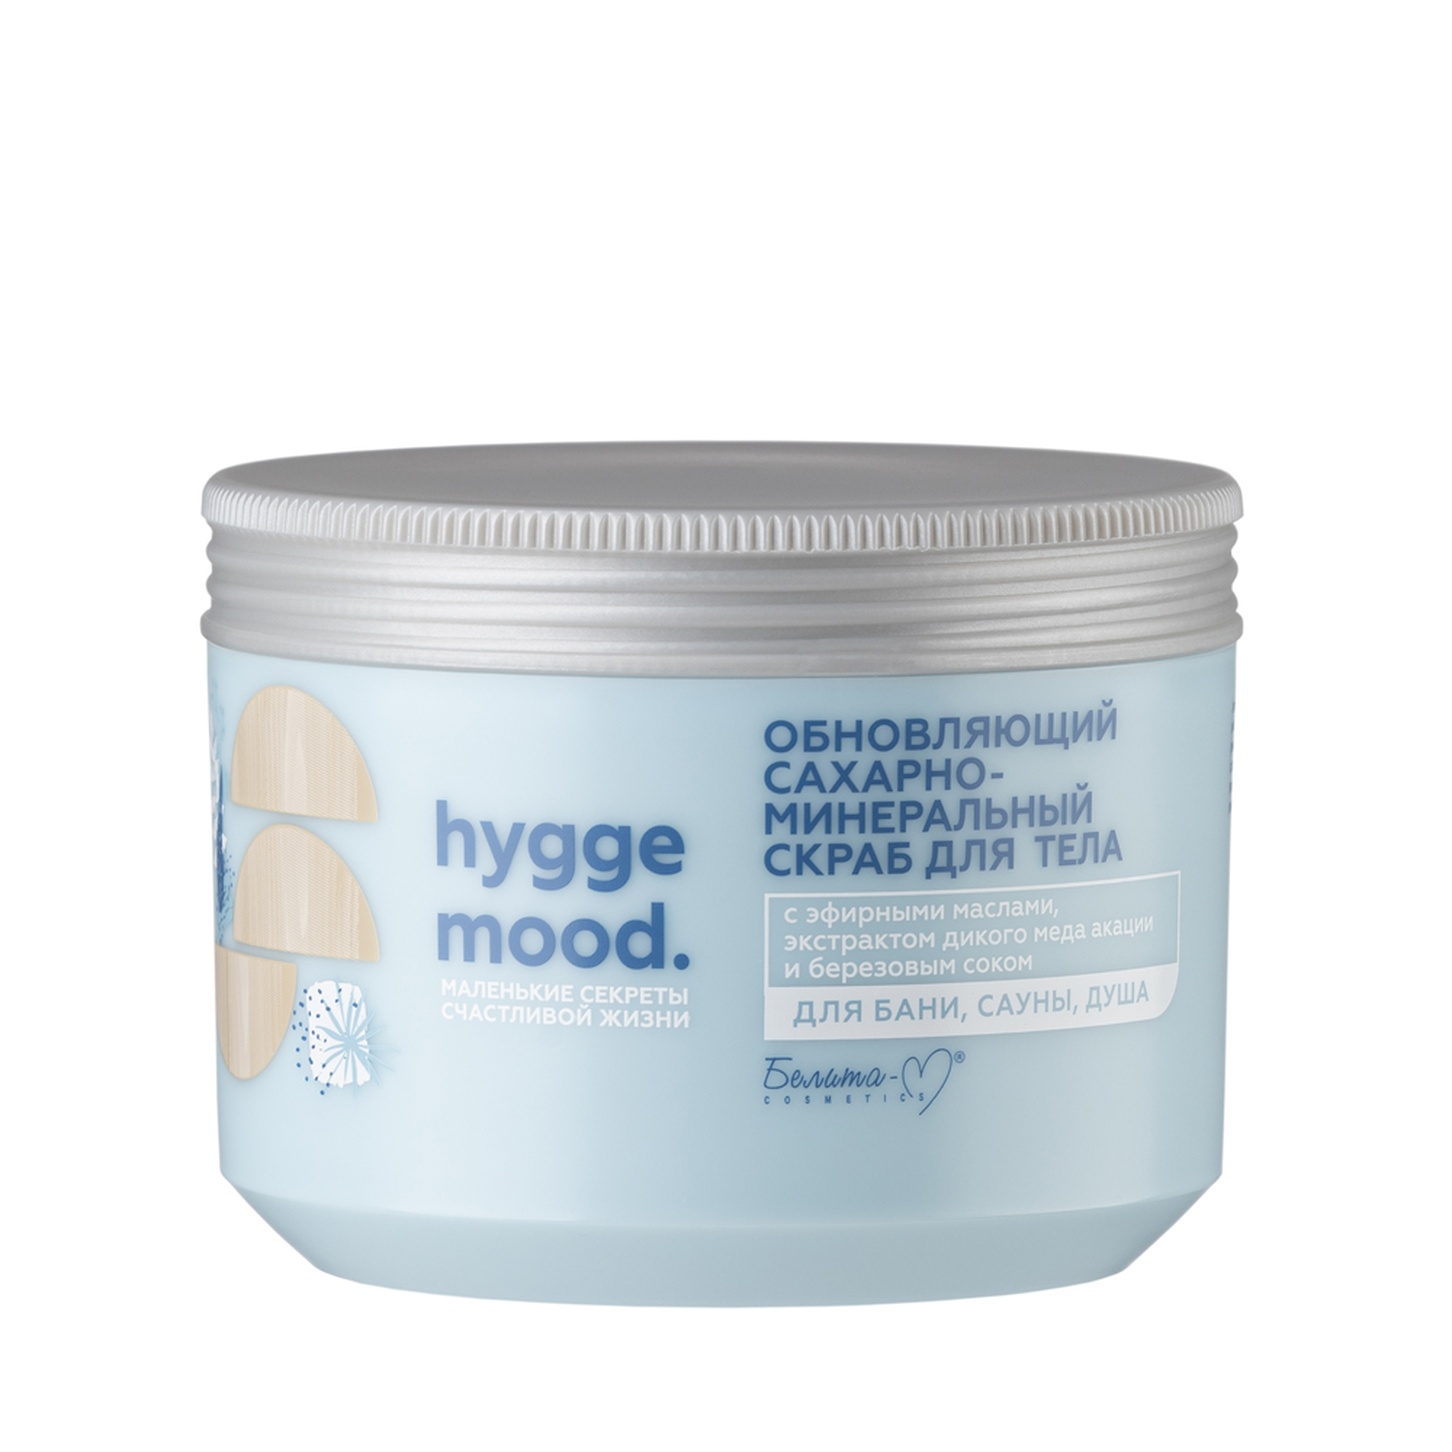 Скраб для тела Hygge Mood обновляющий сахарно-минеральный с эфирными маслами 300г Белика-М/6/ОПТ